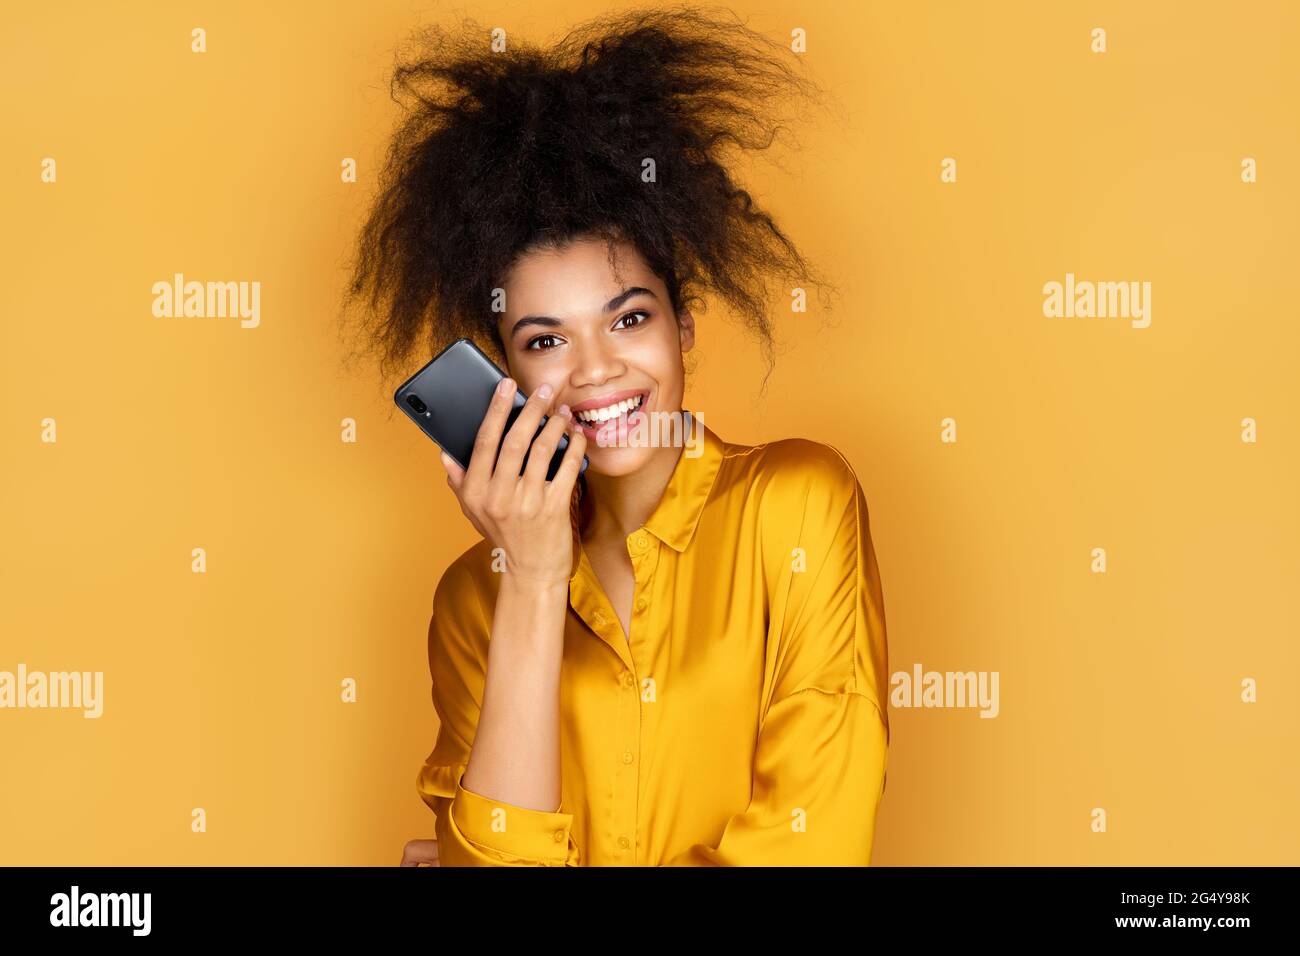 Fille utilise le téléphone, laisse un message vocal. Photo d'une fille afro-américaine sur fond jaune Banque D'Images